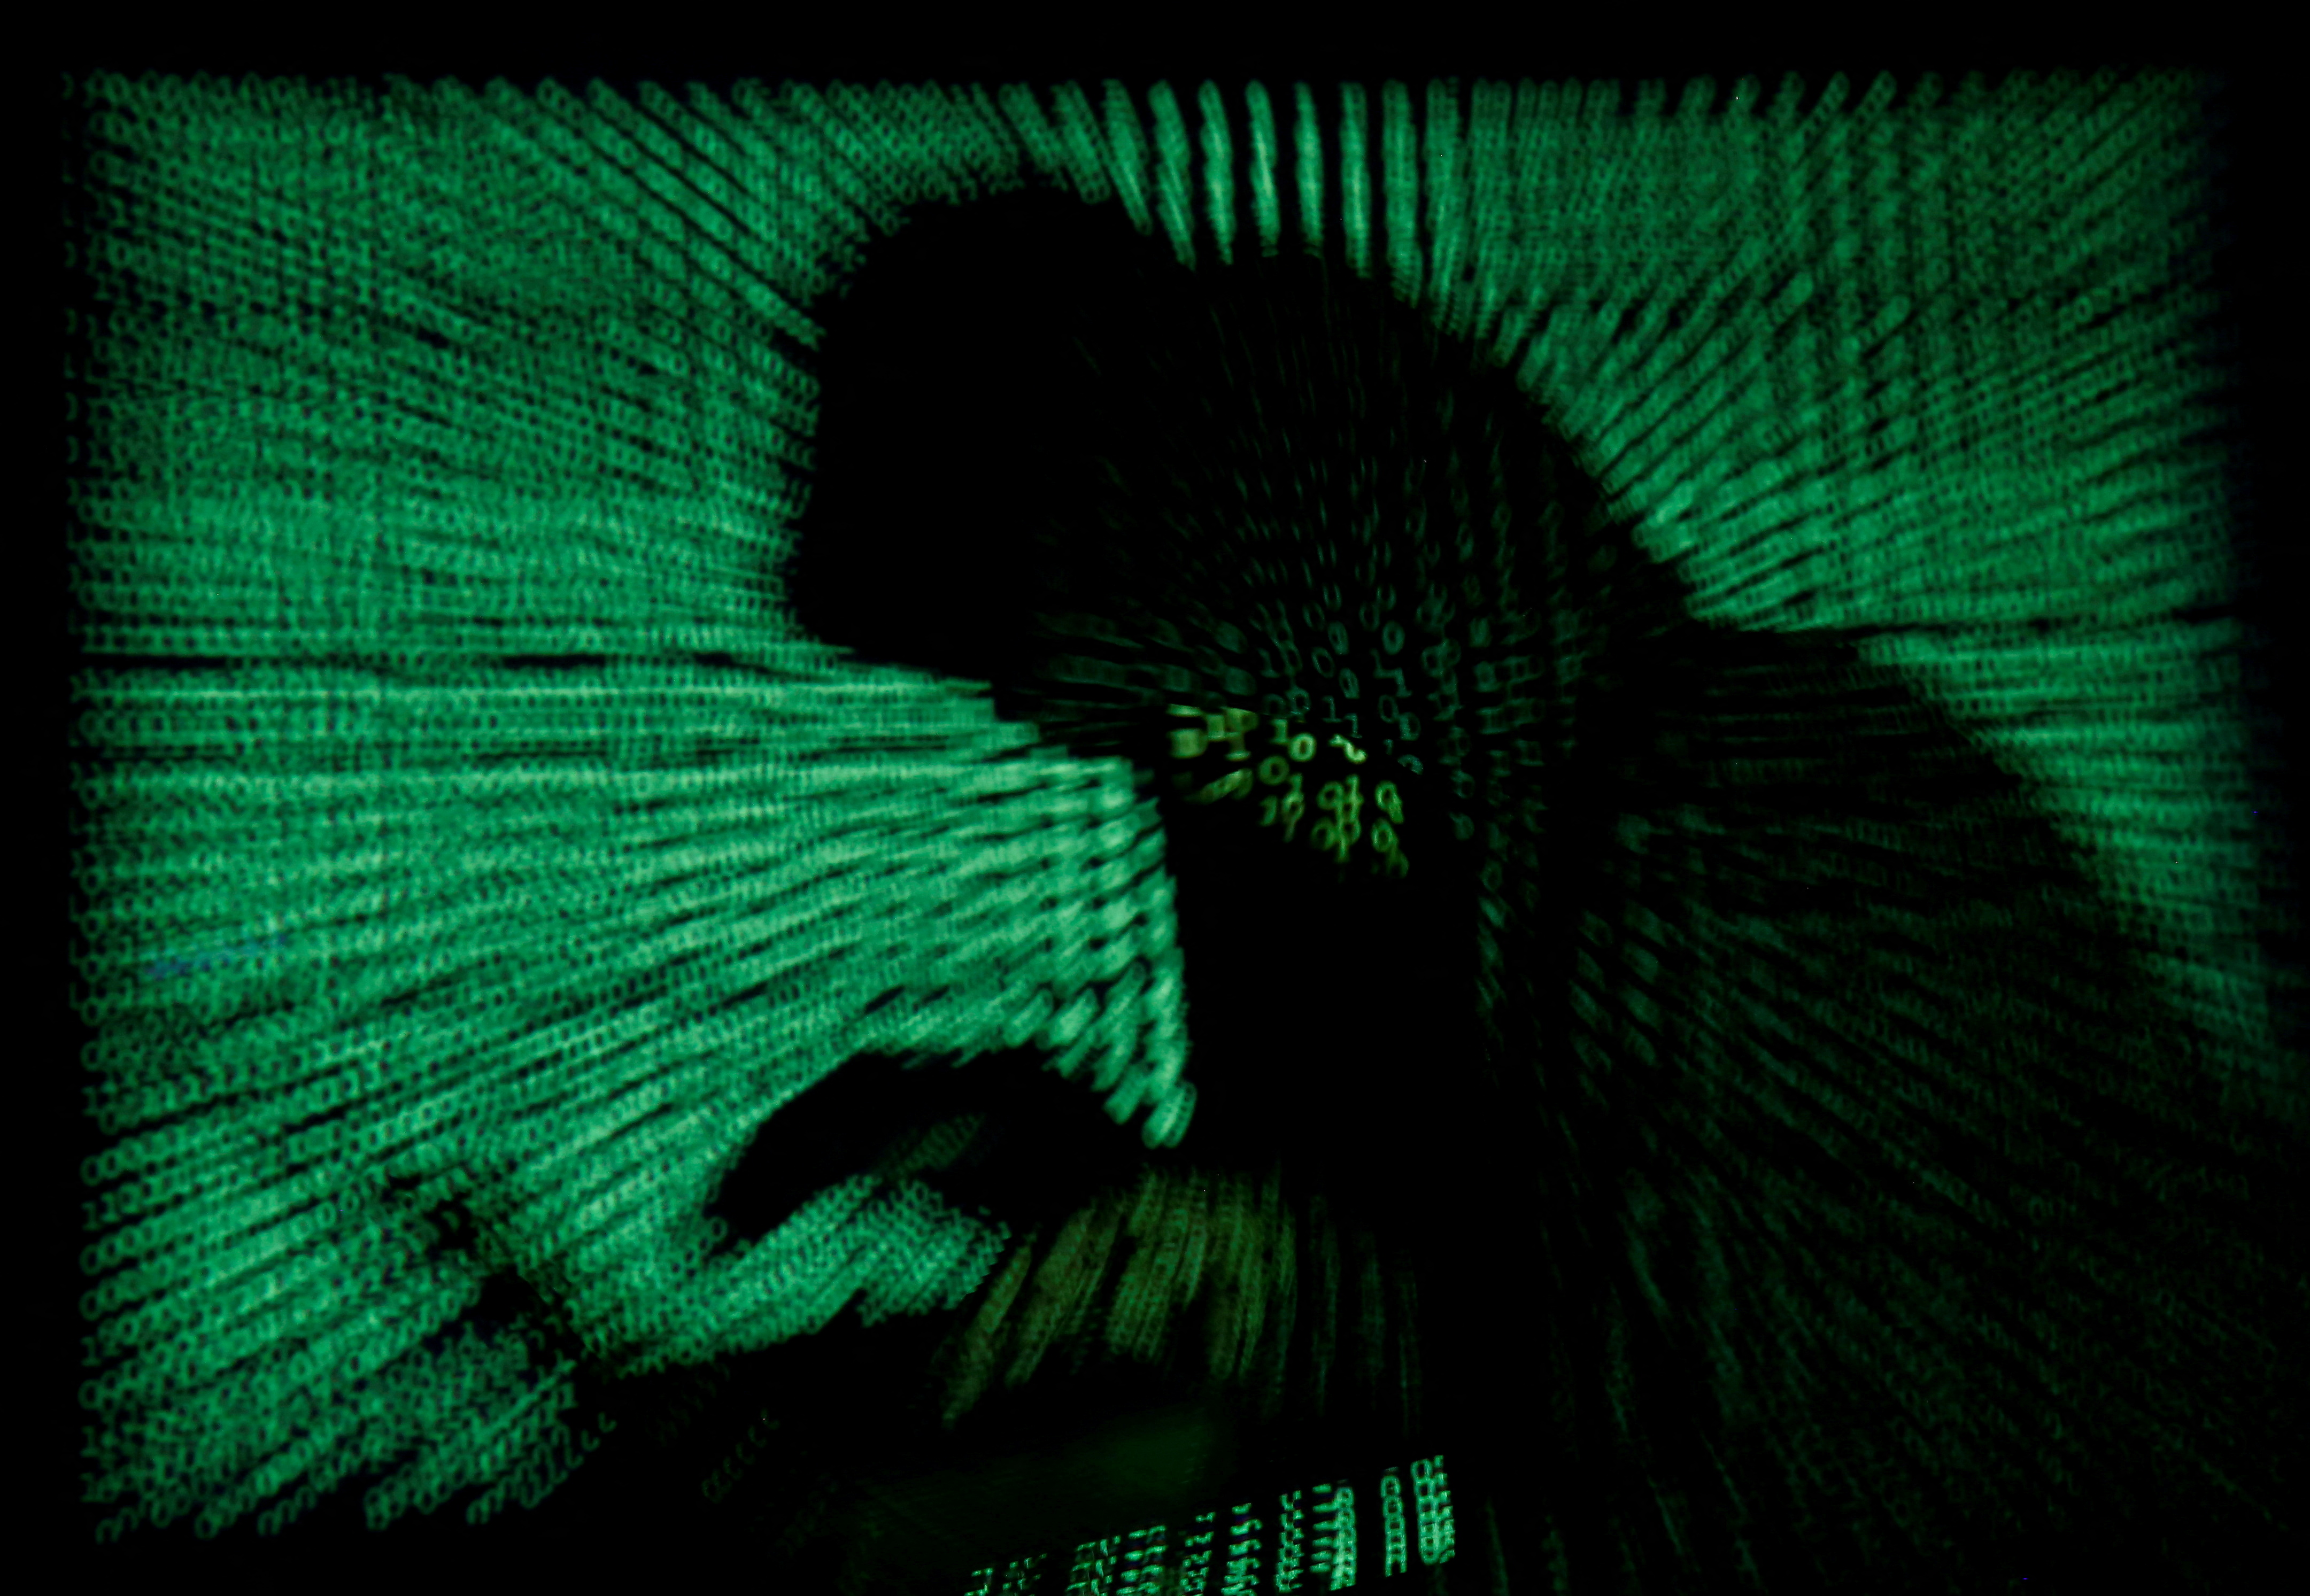 Un ciberdelincuente trabaja en su laptop mientras un complejo código se proyecta sobre su figura. Los piratas rusos continúan intentando penetrar las defensas ucranianas.  REUTERS/Kacper Pempel/Illustration.